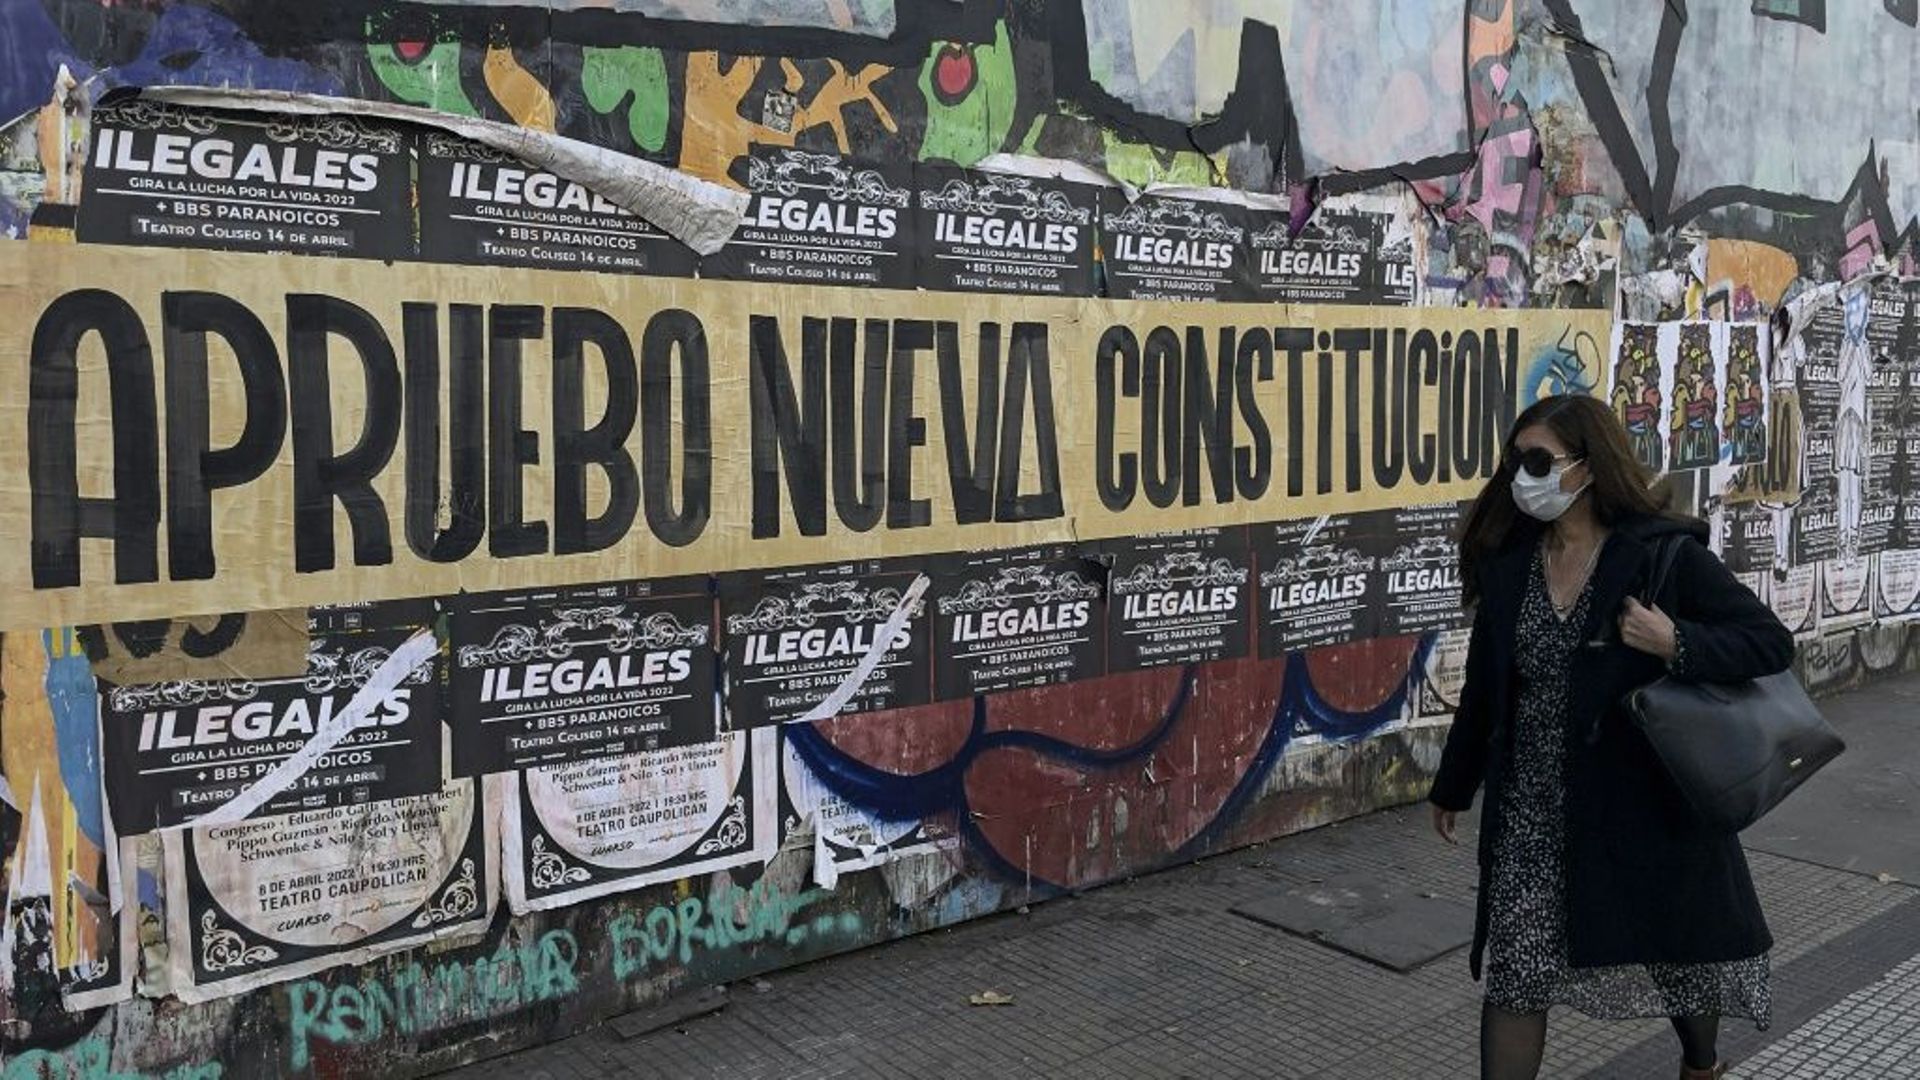 Dans les rues de Santiago des affiches appellent à voter en faveur de l'instauration d'une nouvelle Constitution, le 10 mai 2022